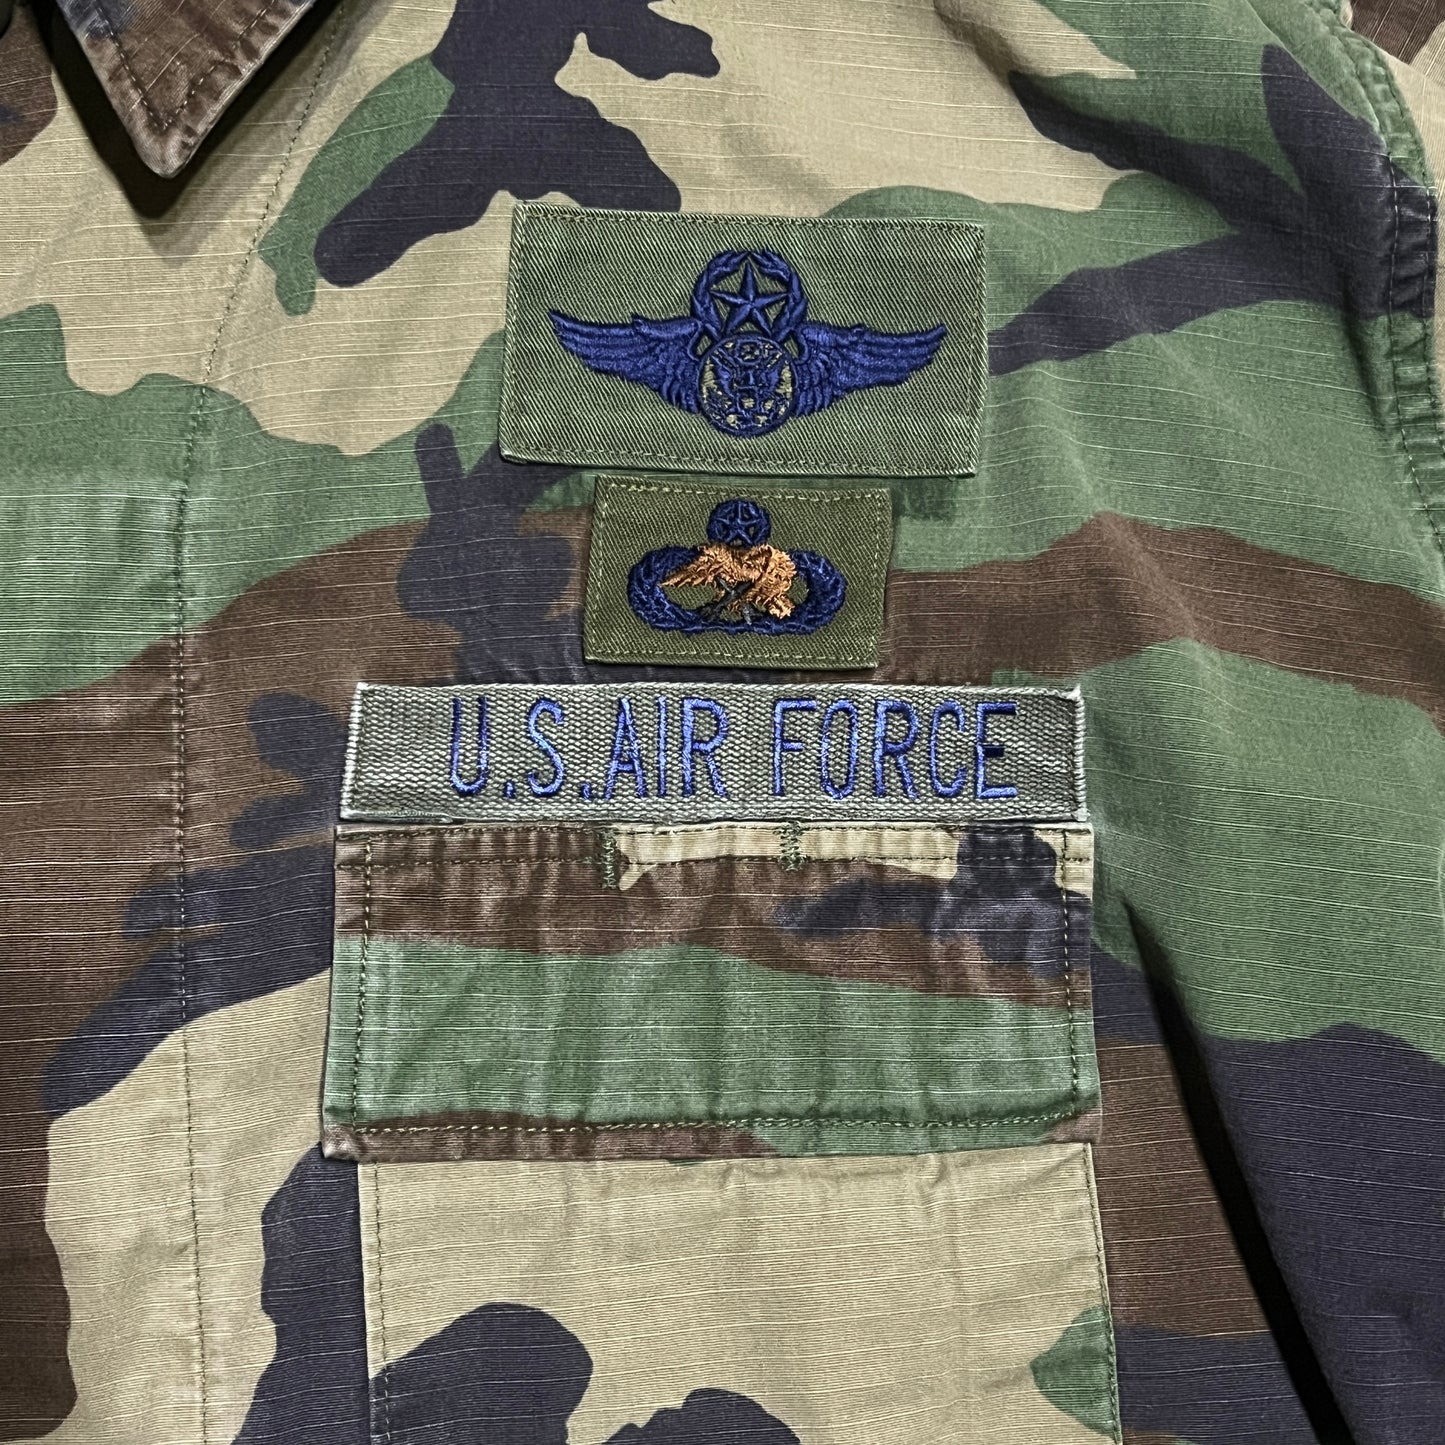 アメリカ軍 1980s- M81 ワッペン長袖迷彩シャツ